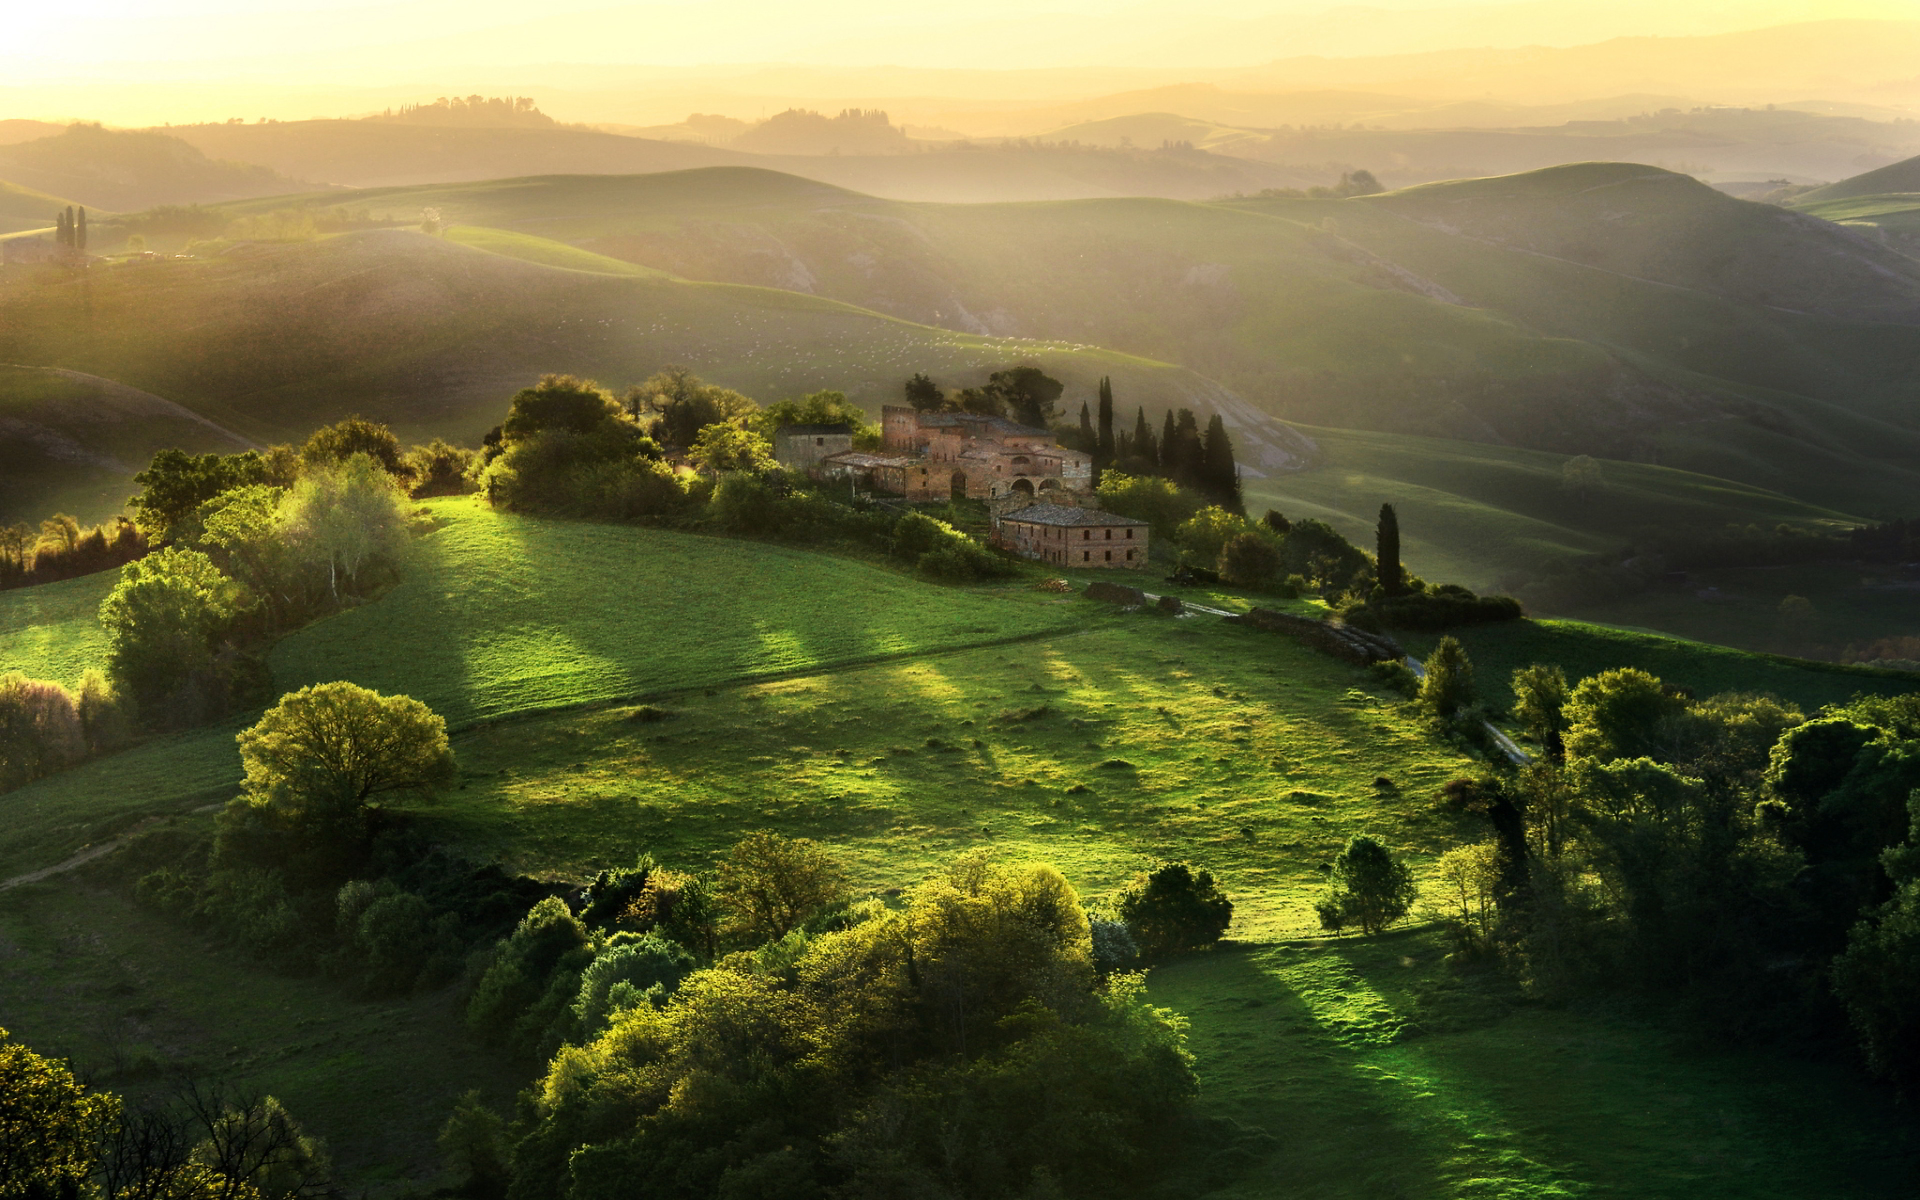 Marvelous scenery of tuscany, italy | t.k pradeep shetty